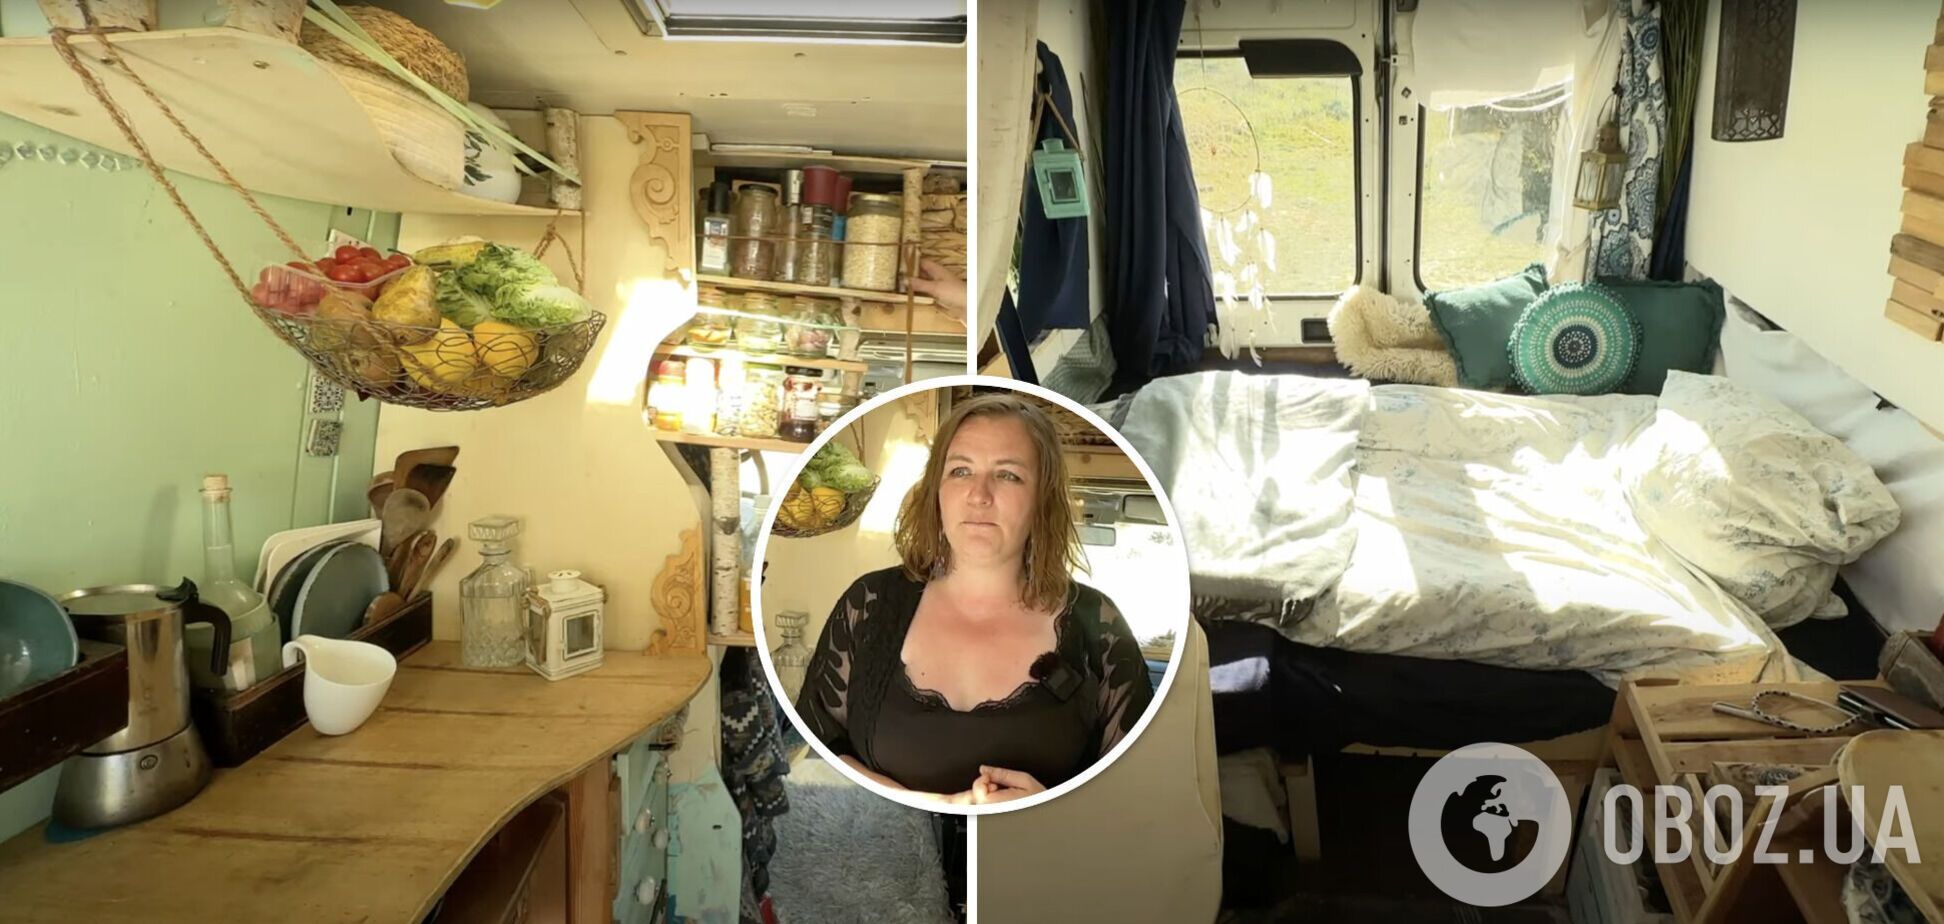 Женщина превратила свой старый минивэн в дом мечты за 4500 долларов: как он выглядит изнутри